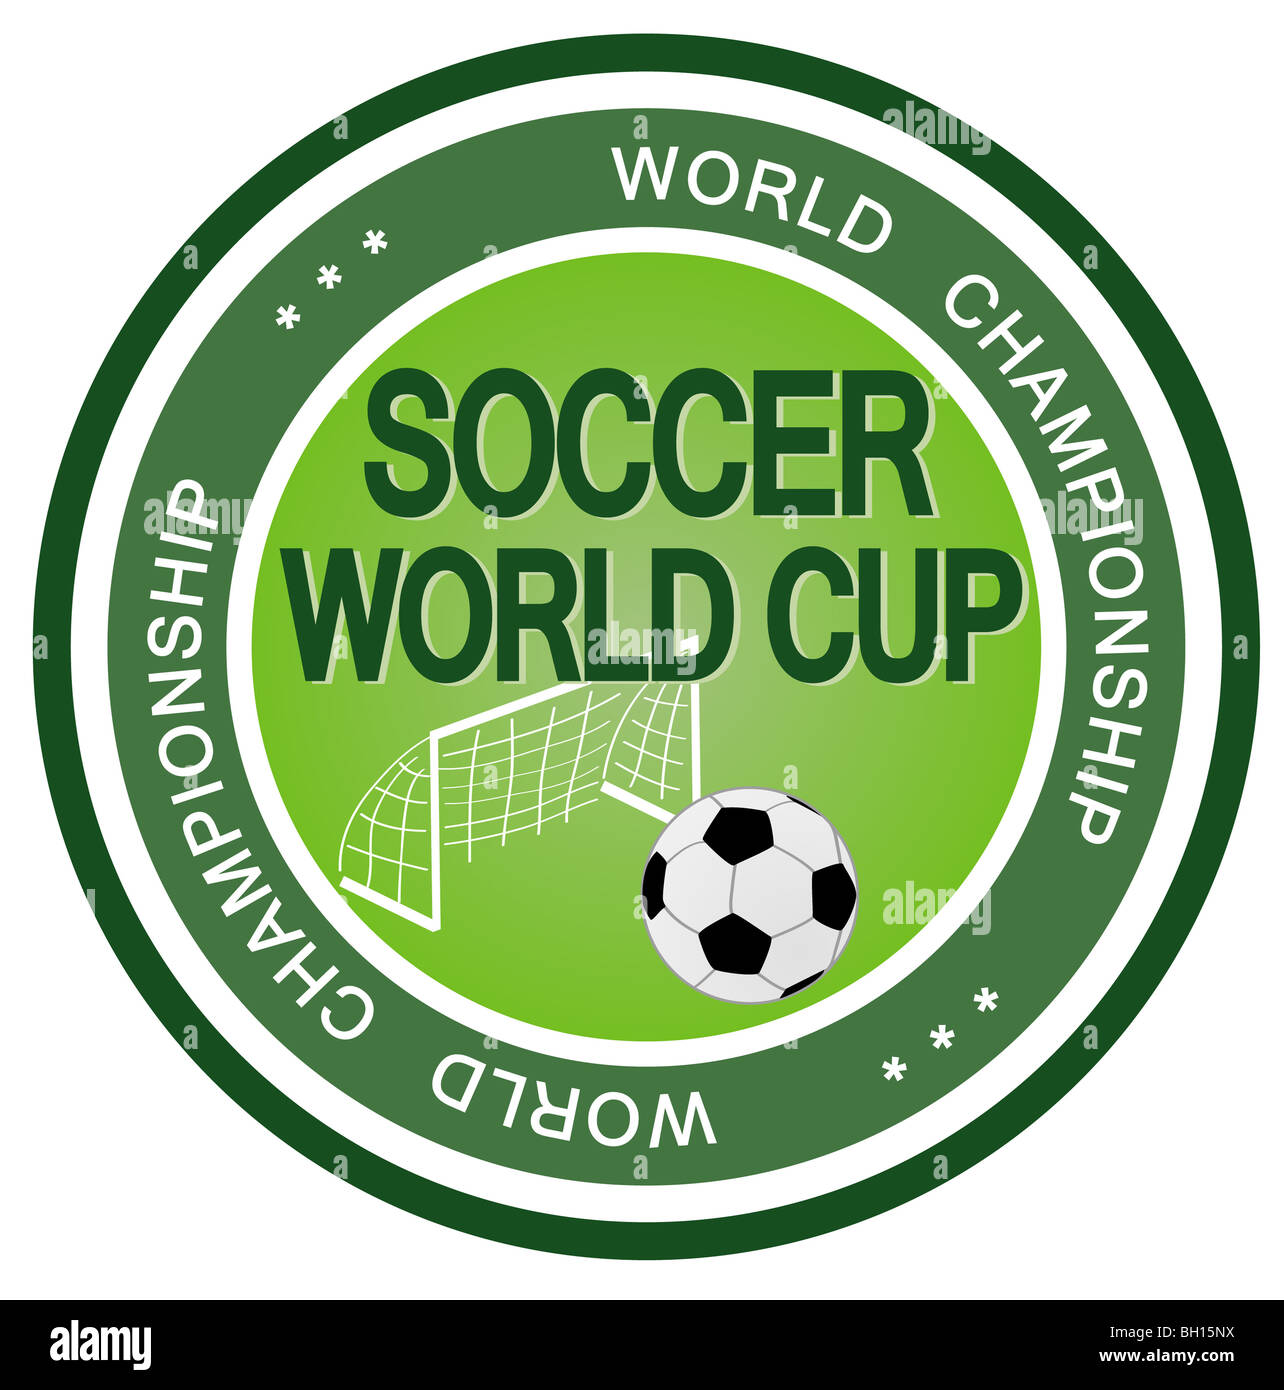 Une illustration d'un insigne symbolisant une prochaine coupe du monde de football. Banque D'Images